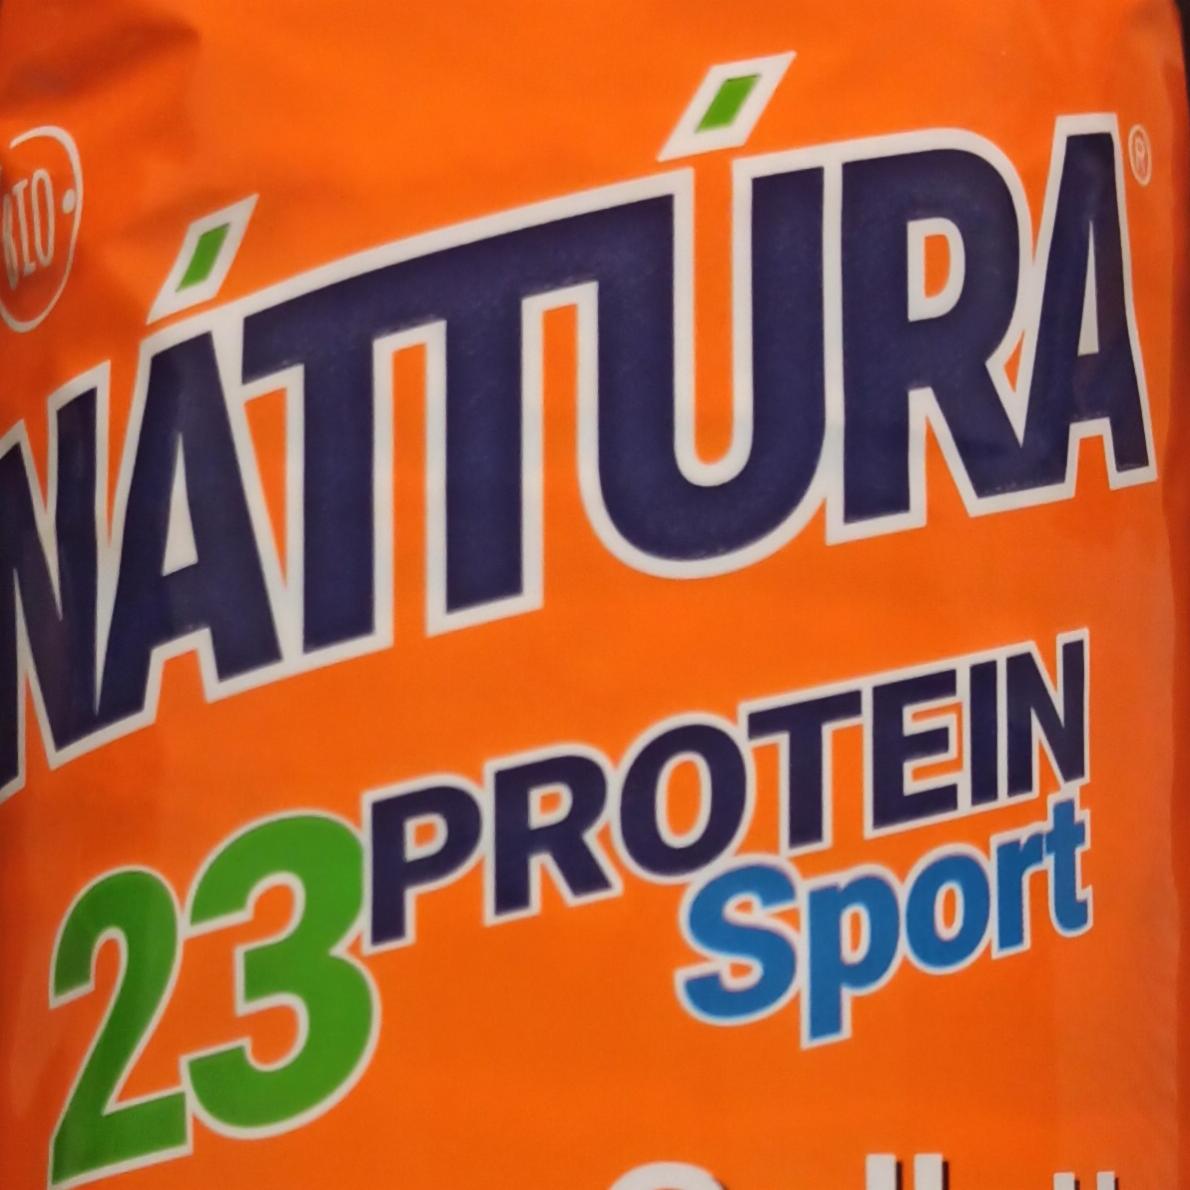 Zdjęcia - Wafle ryżowe 23 Protein Nattura